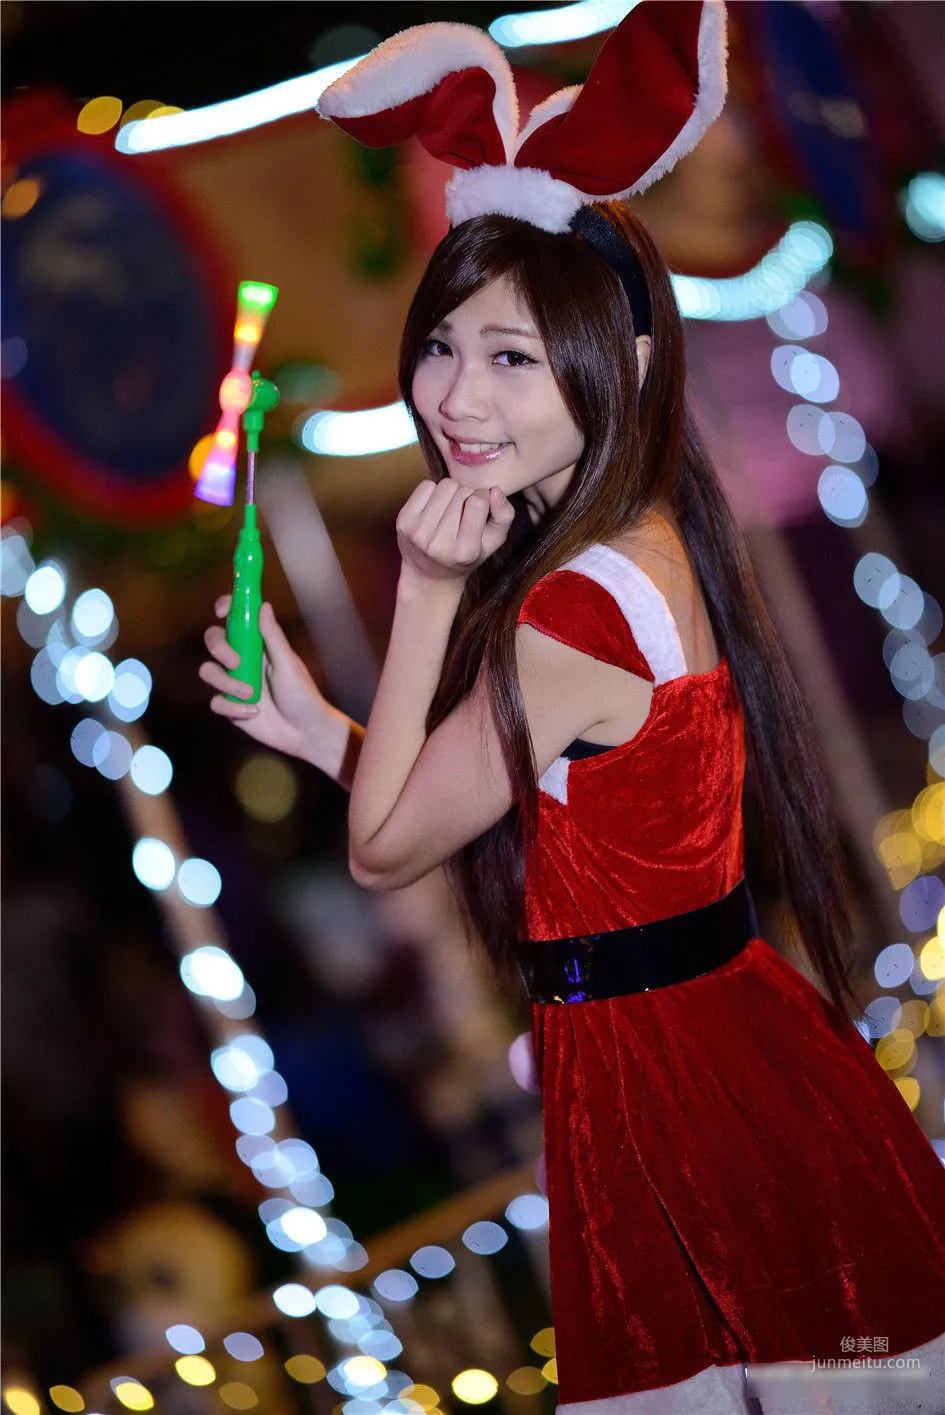 [台湾女神] 张雅筑chu 《板橋車站圣诞节外拍》 写真集9